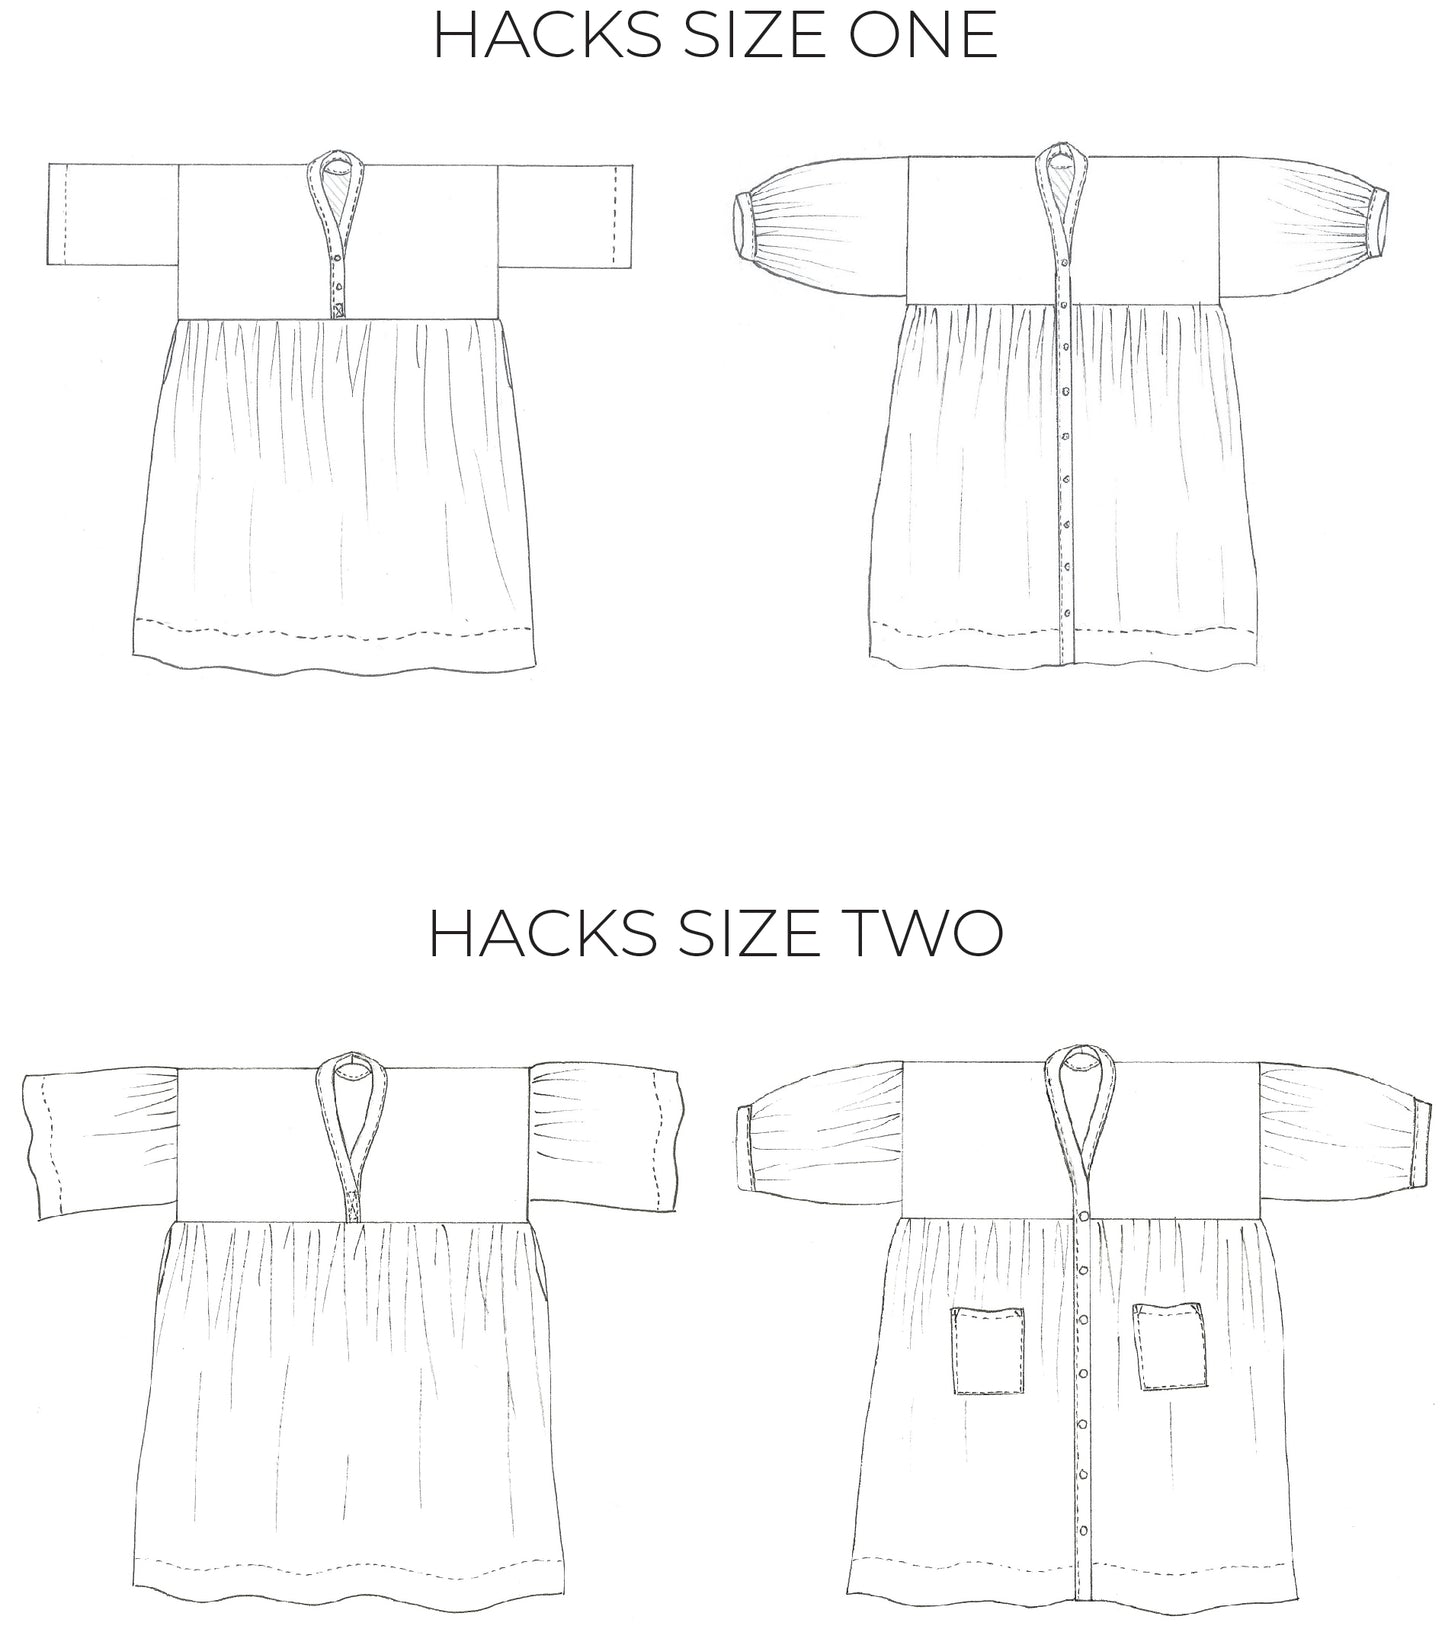 Birgitta Helmersson Zero Waste Gather Dress  - PDF Pattern